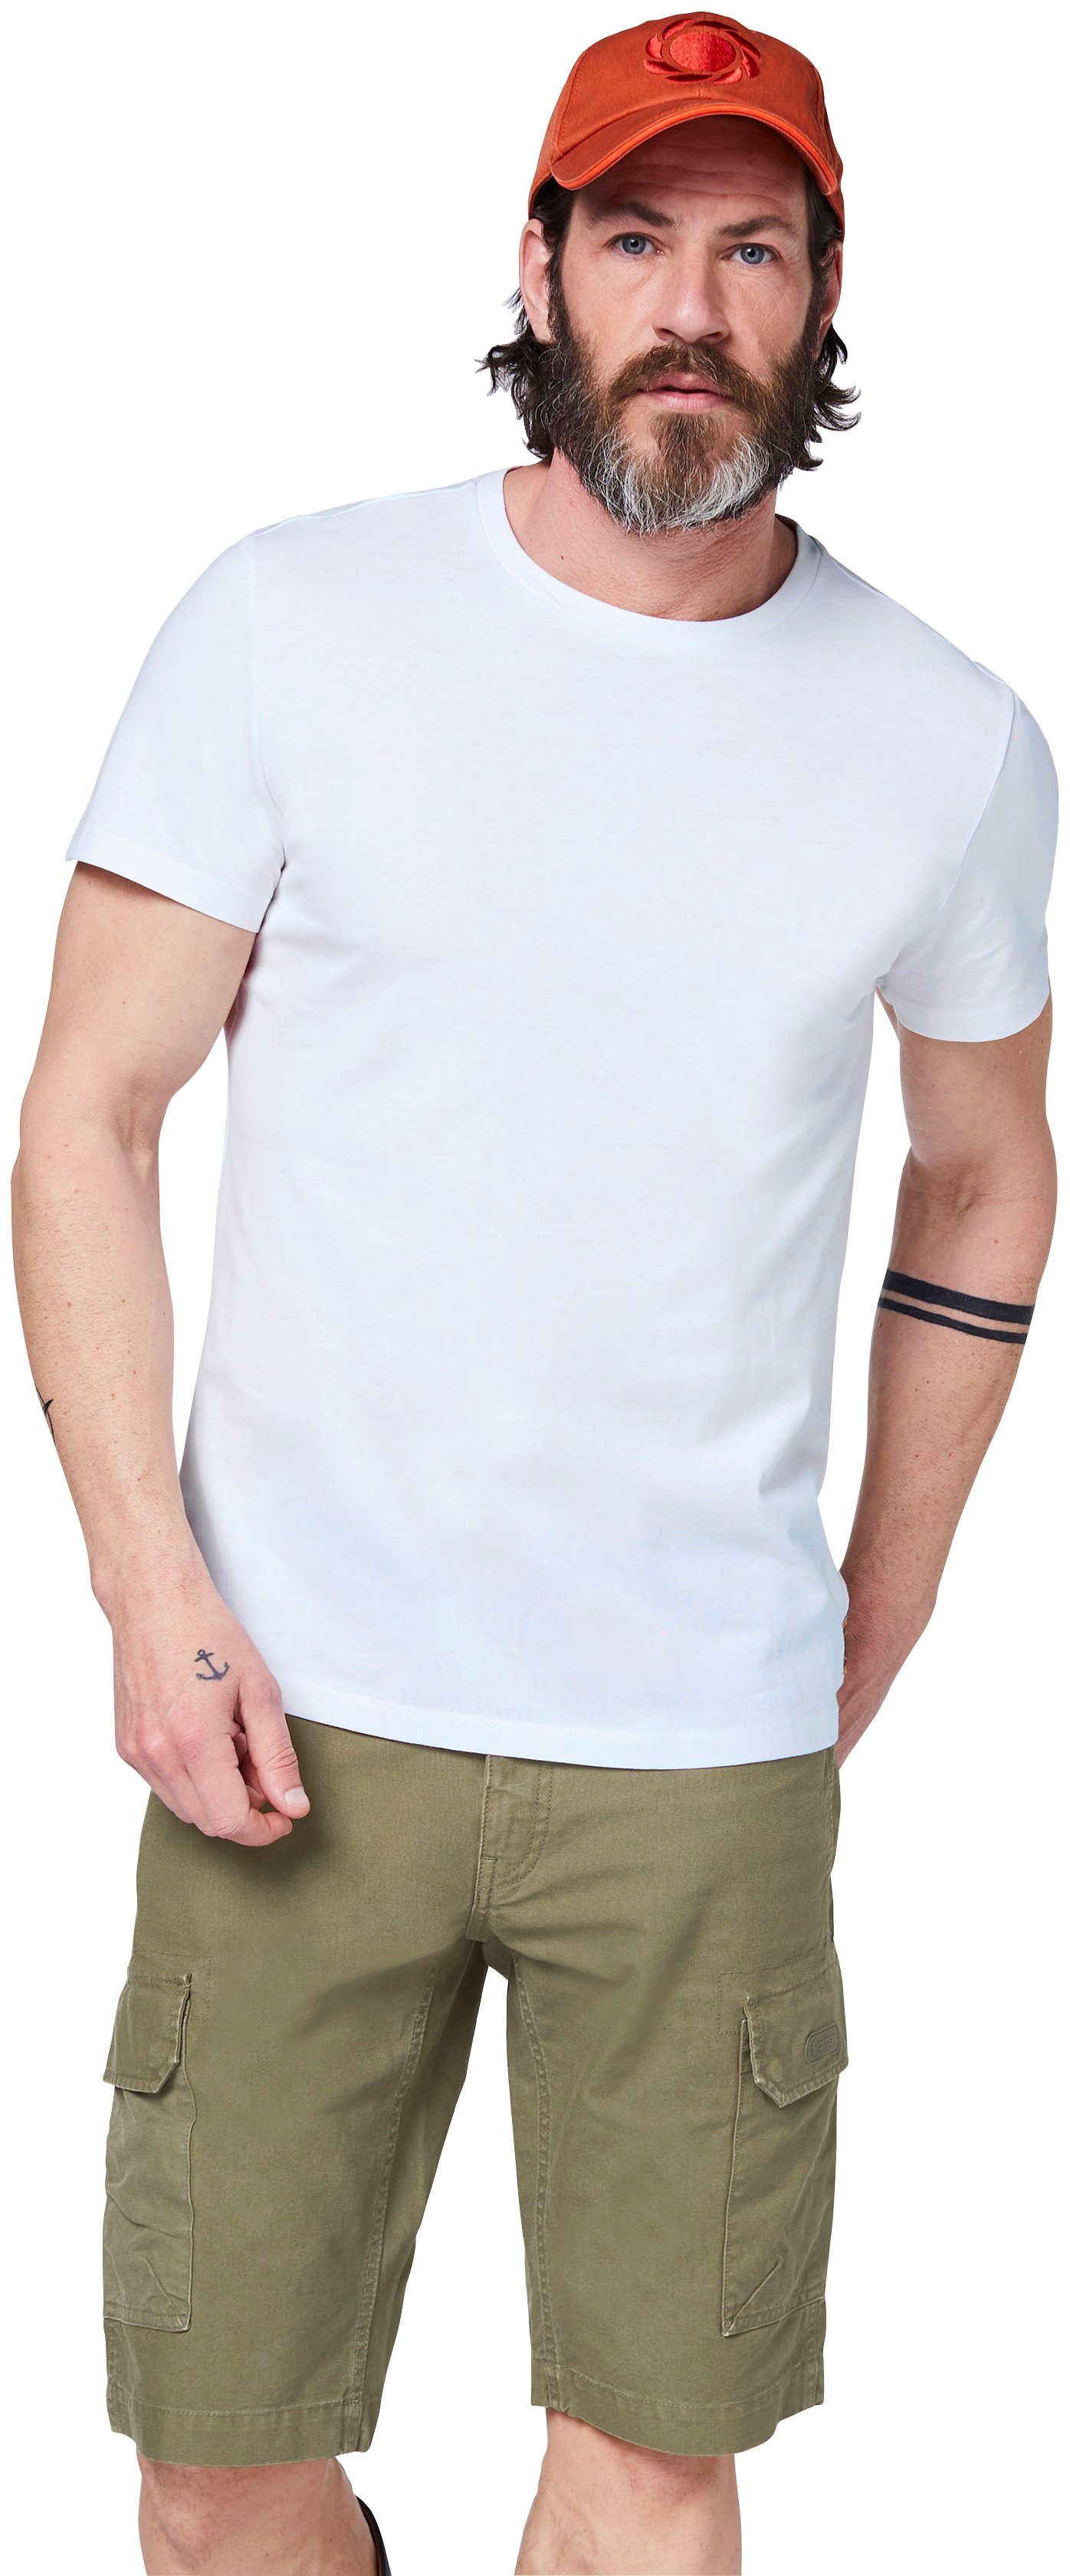 GARDENA T-Shirt Bright White